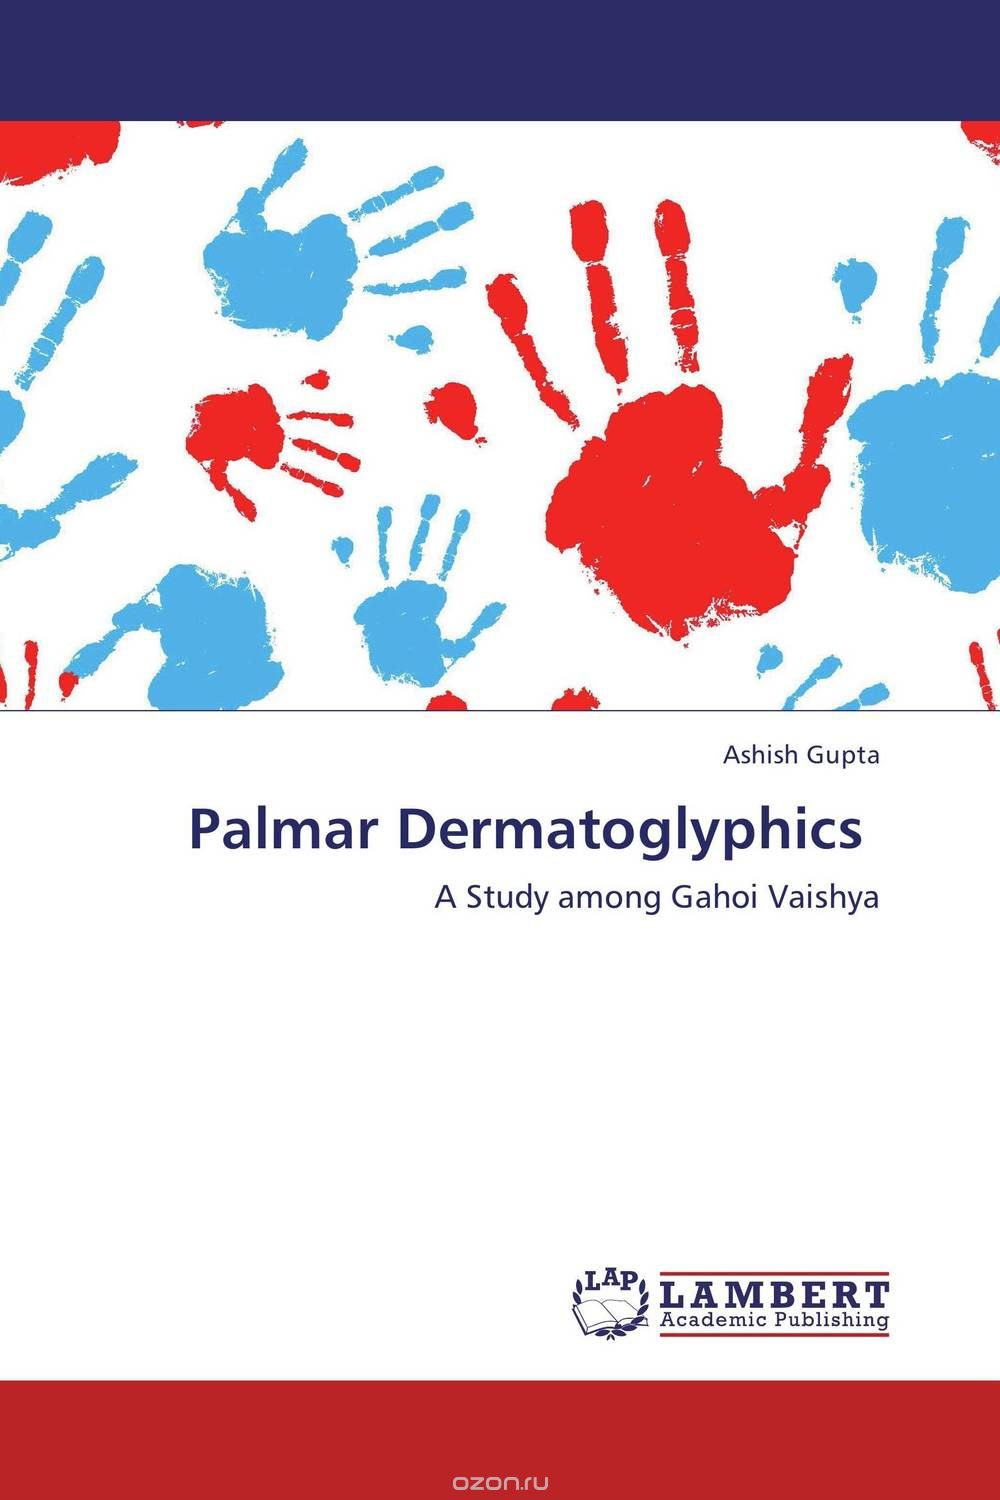 Скачать книгу "Palmar Dermatoglyphics"